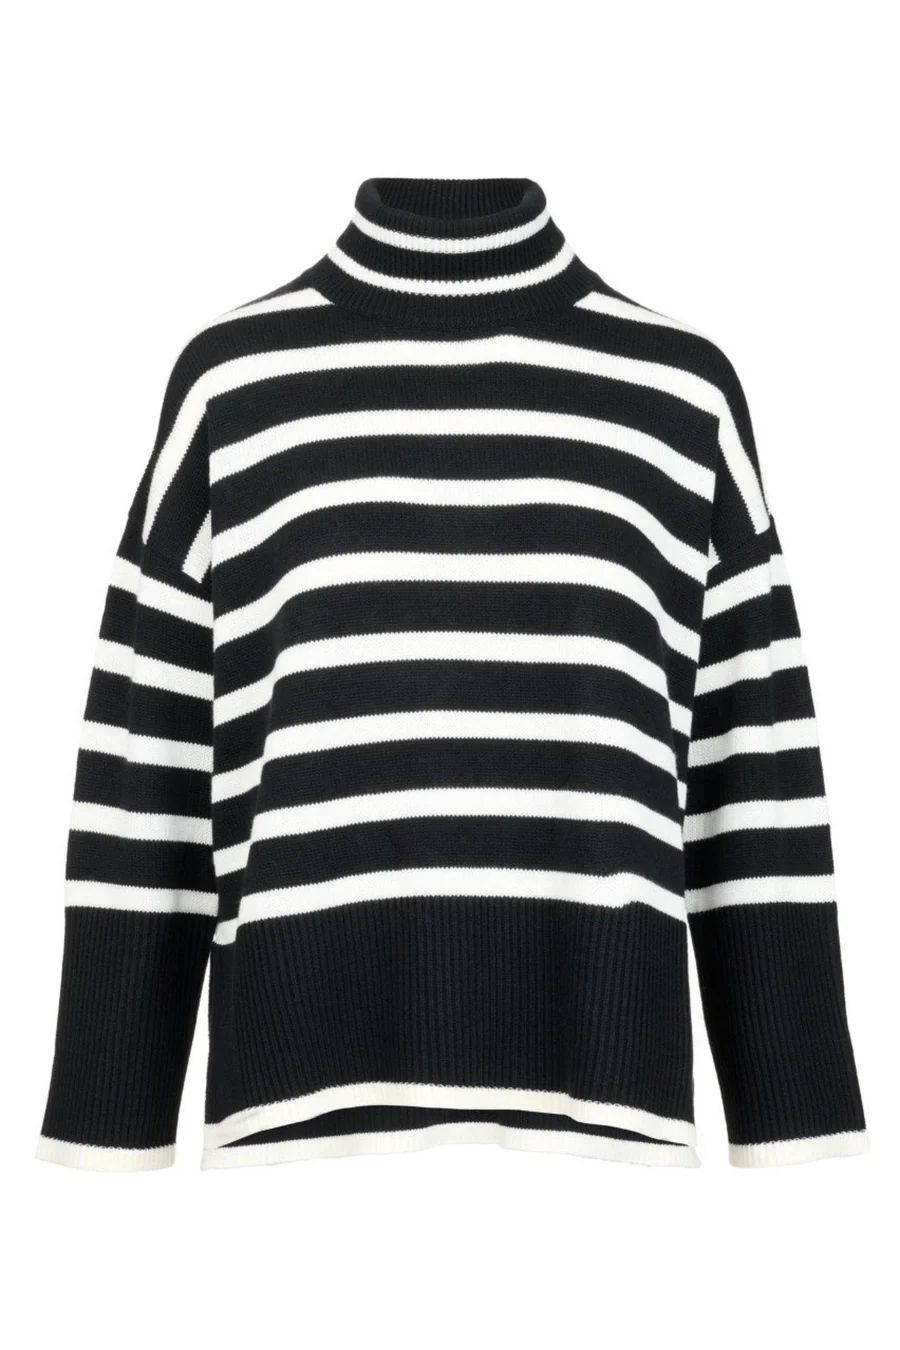 The Striped Sweater in Black | Popski London